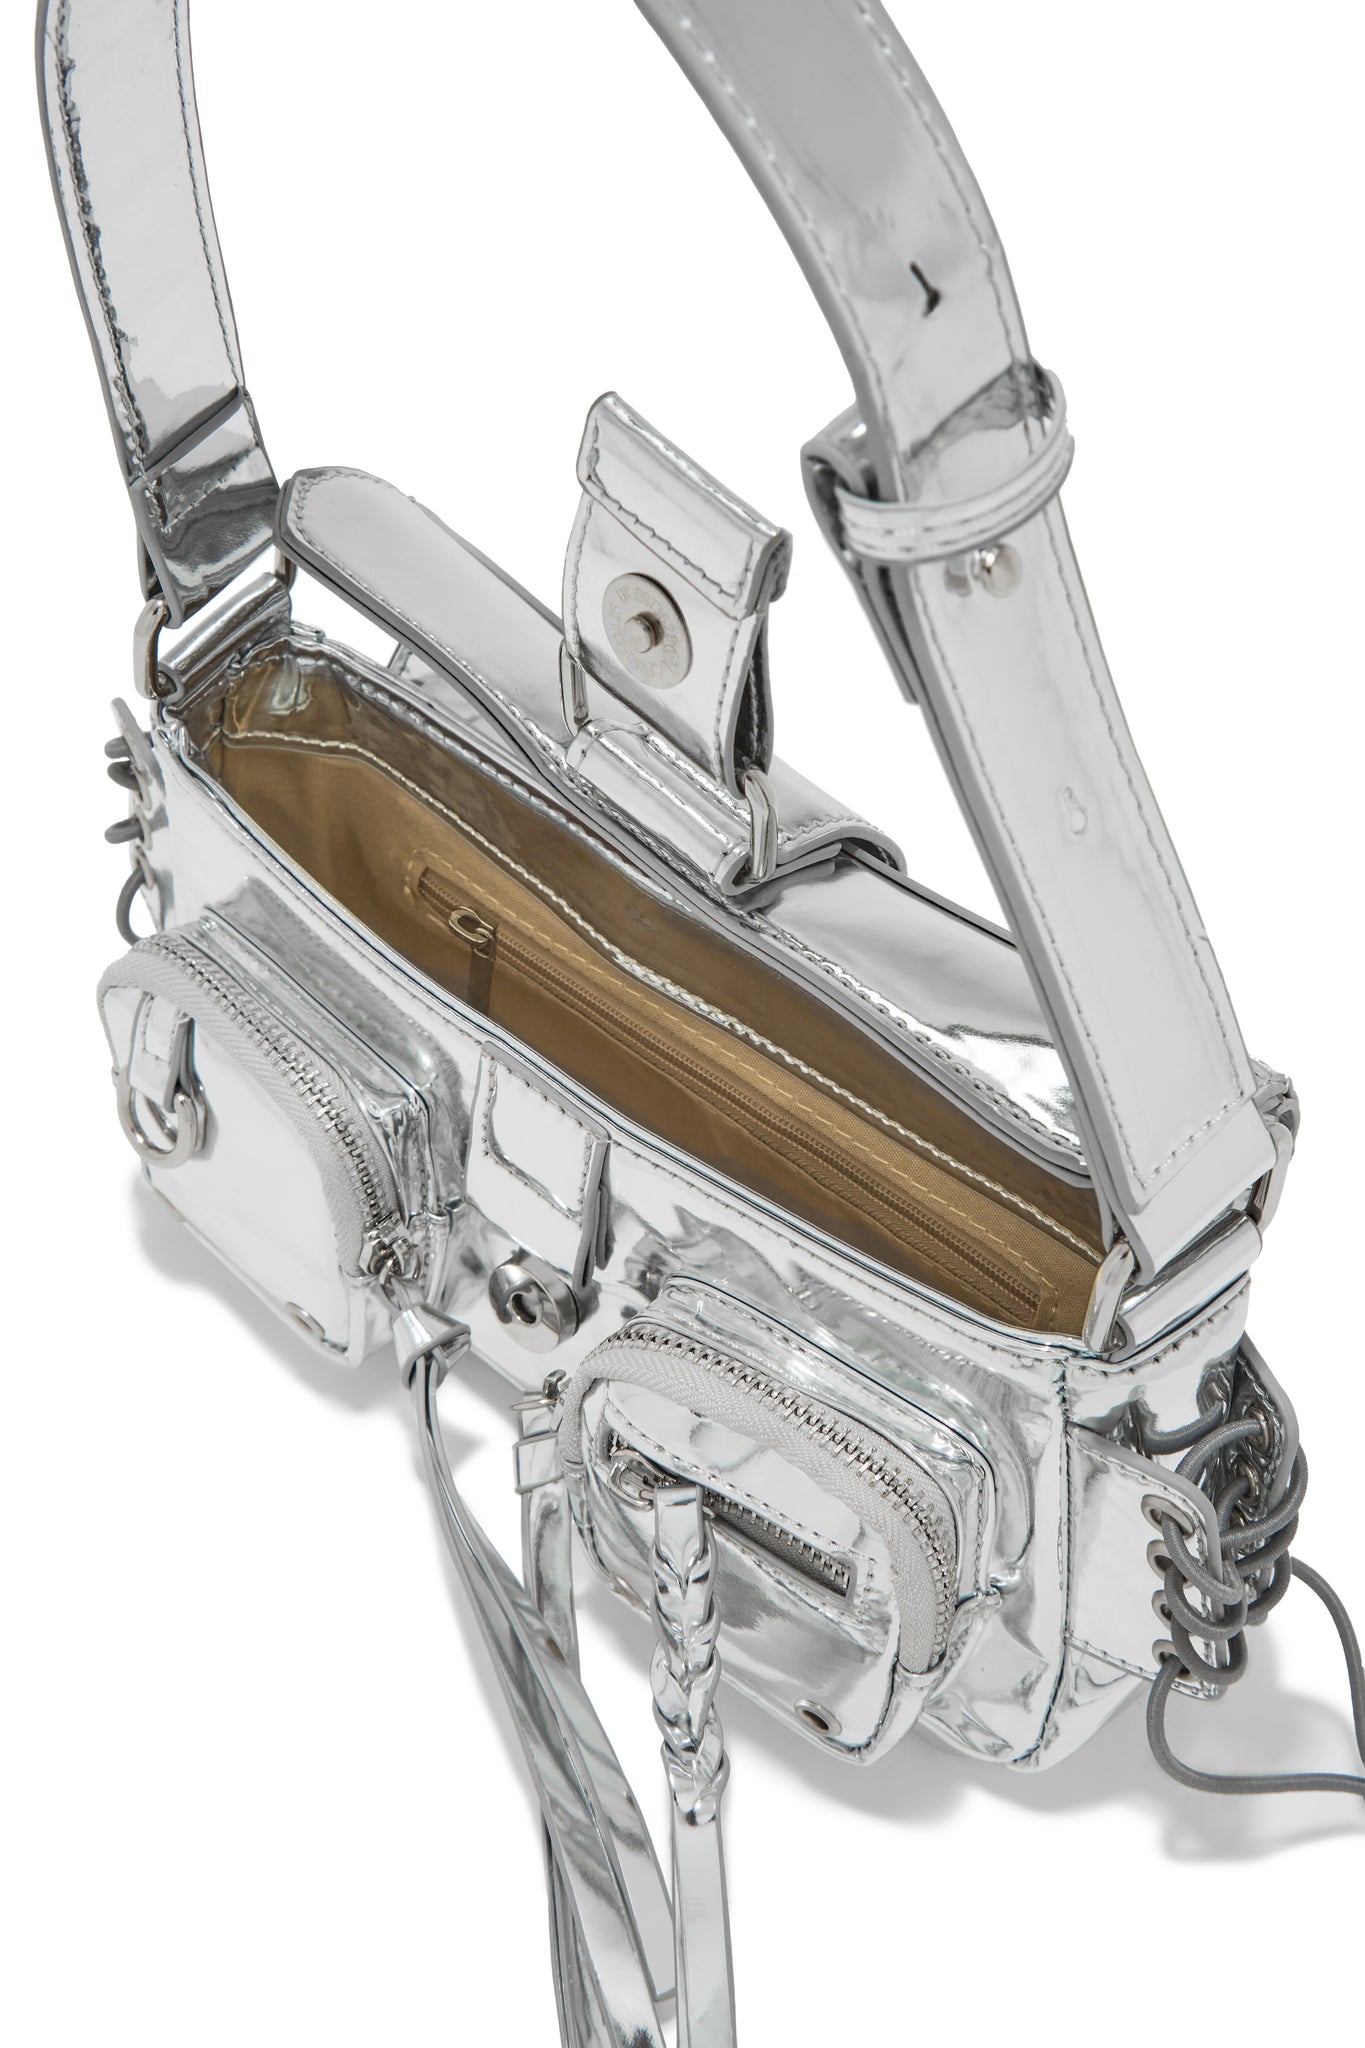 Elise Micro Handbag - A New Day™ Silver